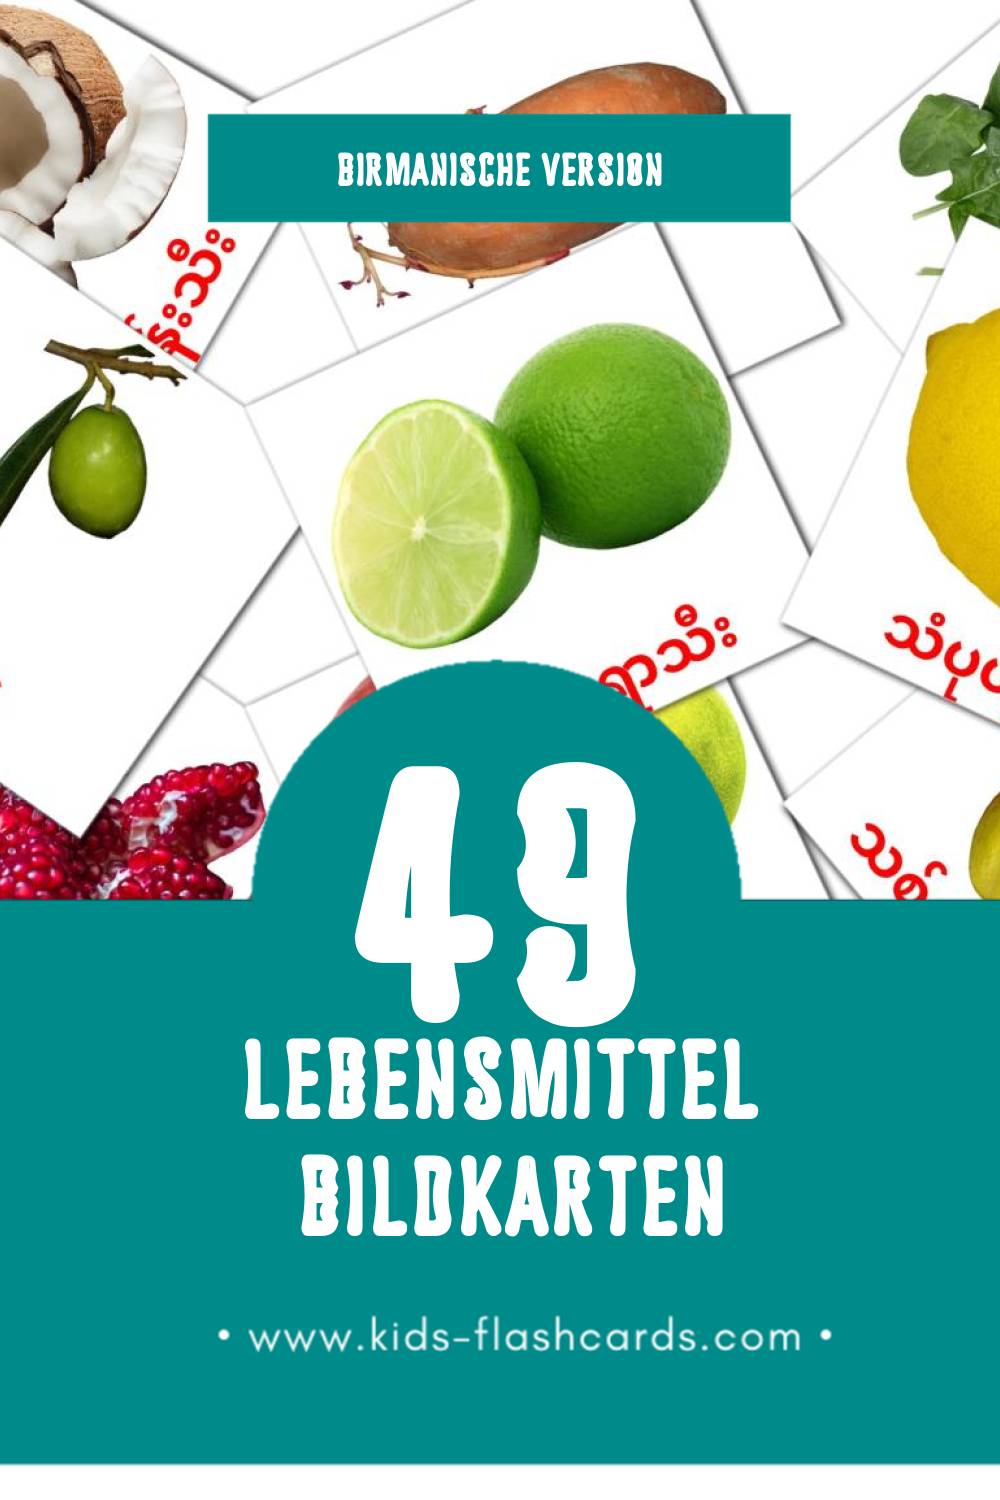 Visual အစားအသောက် Flashcards für Kleinkinder (49 Karten in Birmanisch)